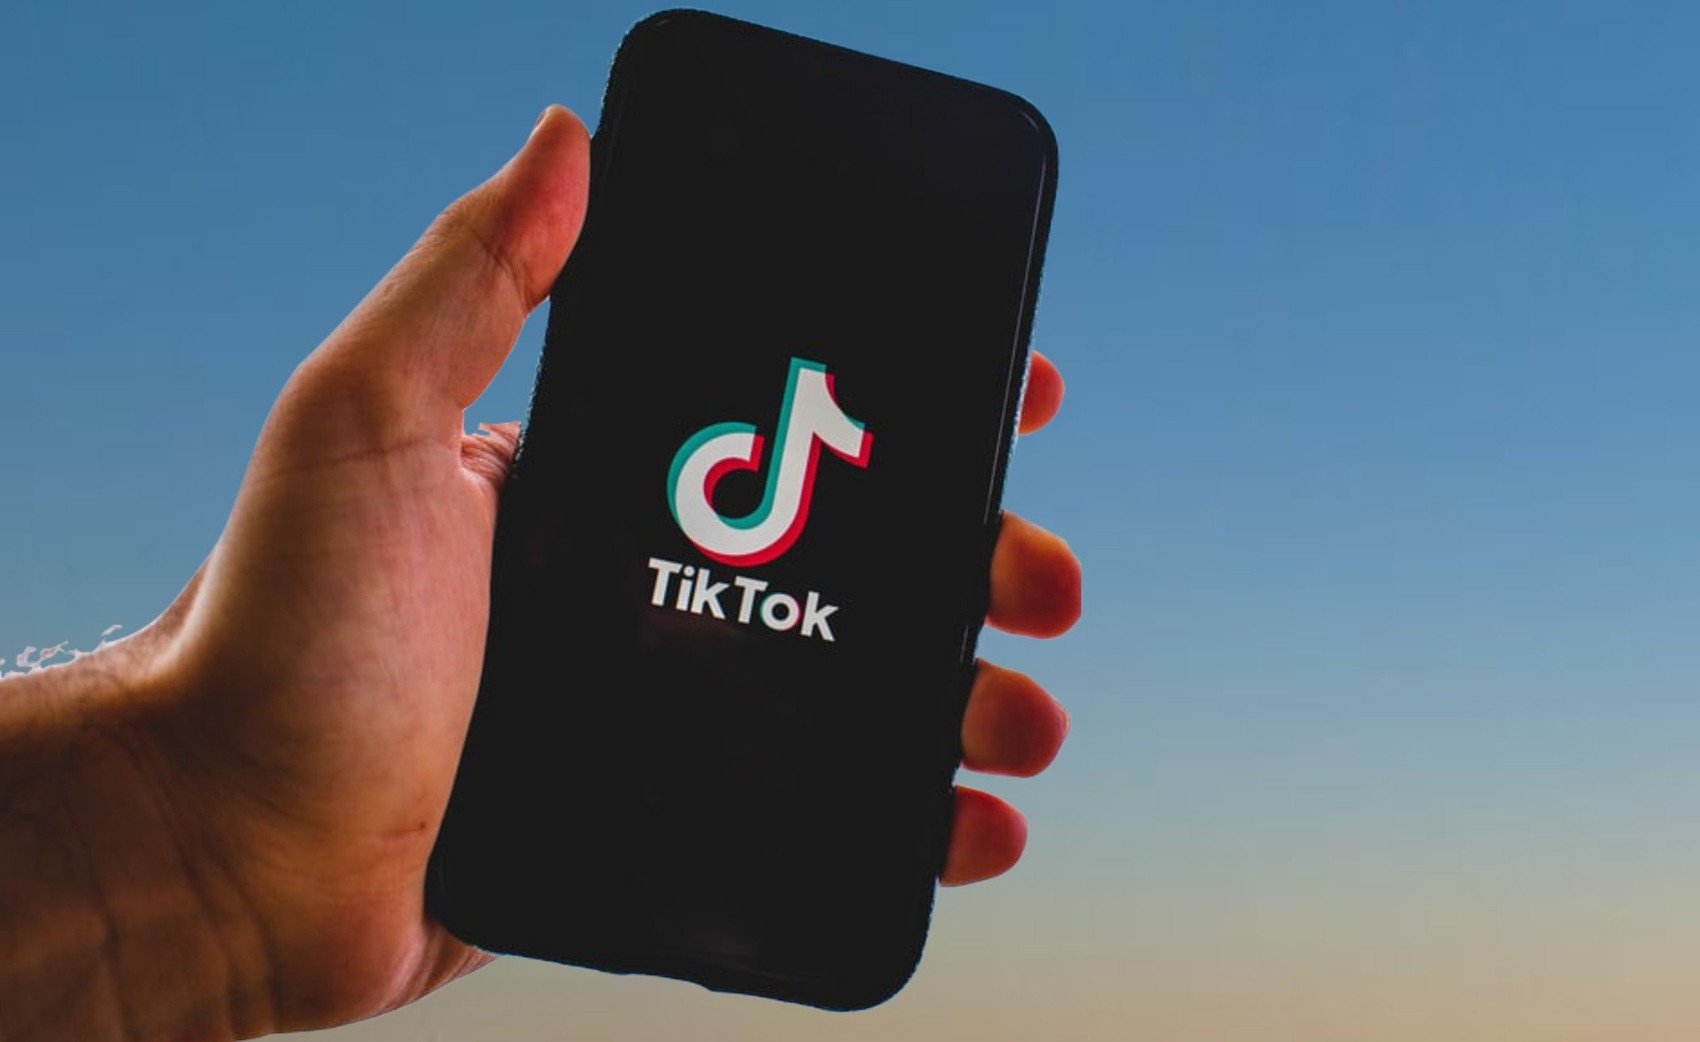 TikTok on Smartphone - Image by Nitish Gupta